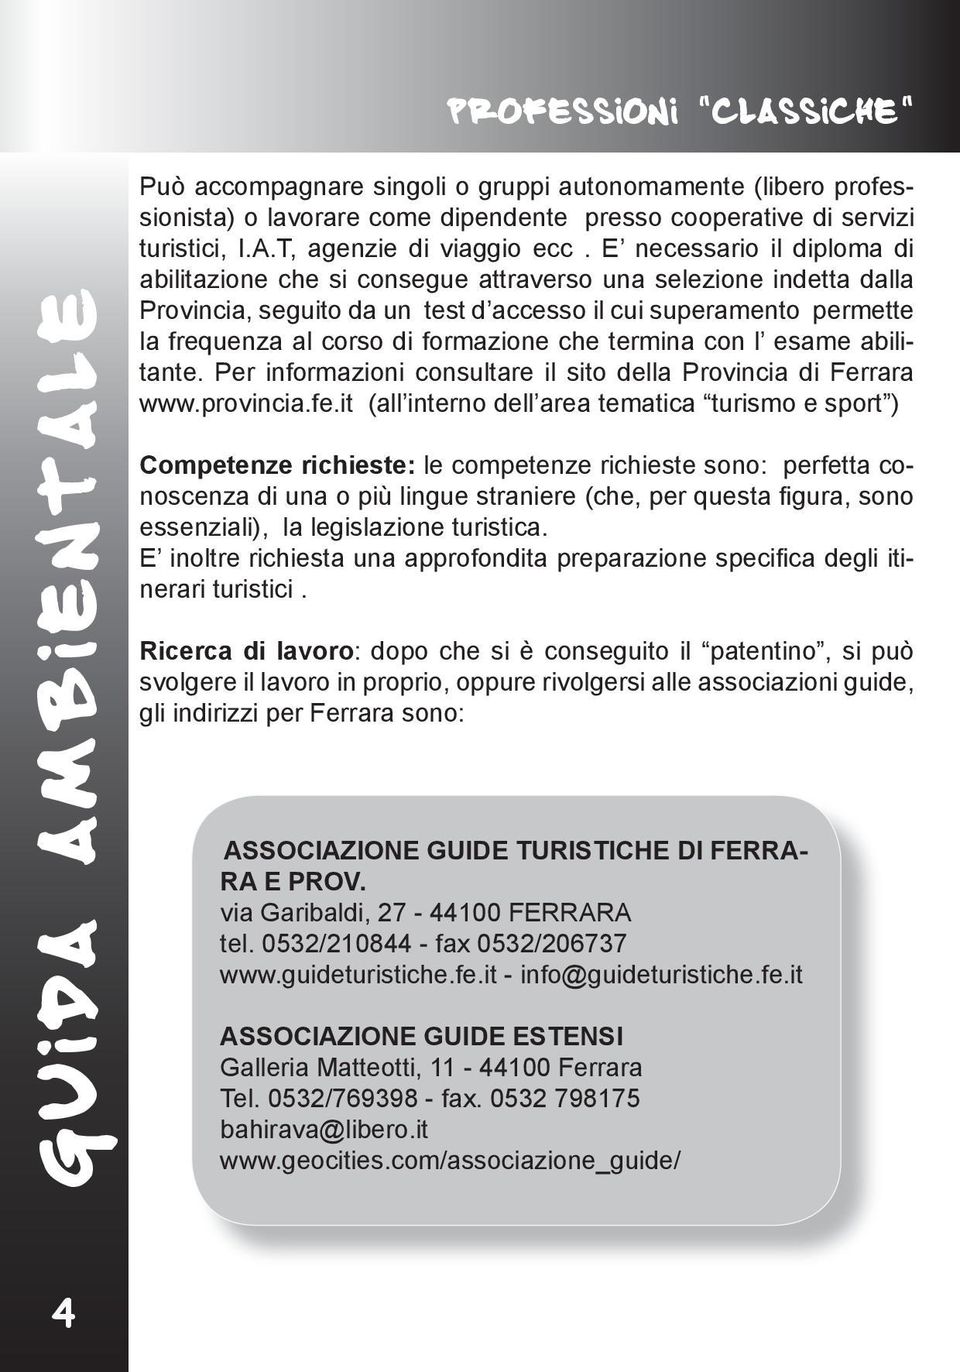 che termina con l esame abilitante. Per informazioni consultare il sito della Provincia di Ferrara www.provincia.fe.